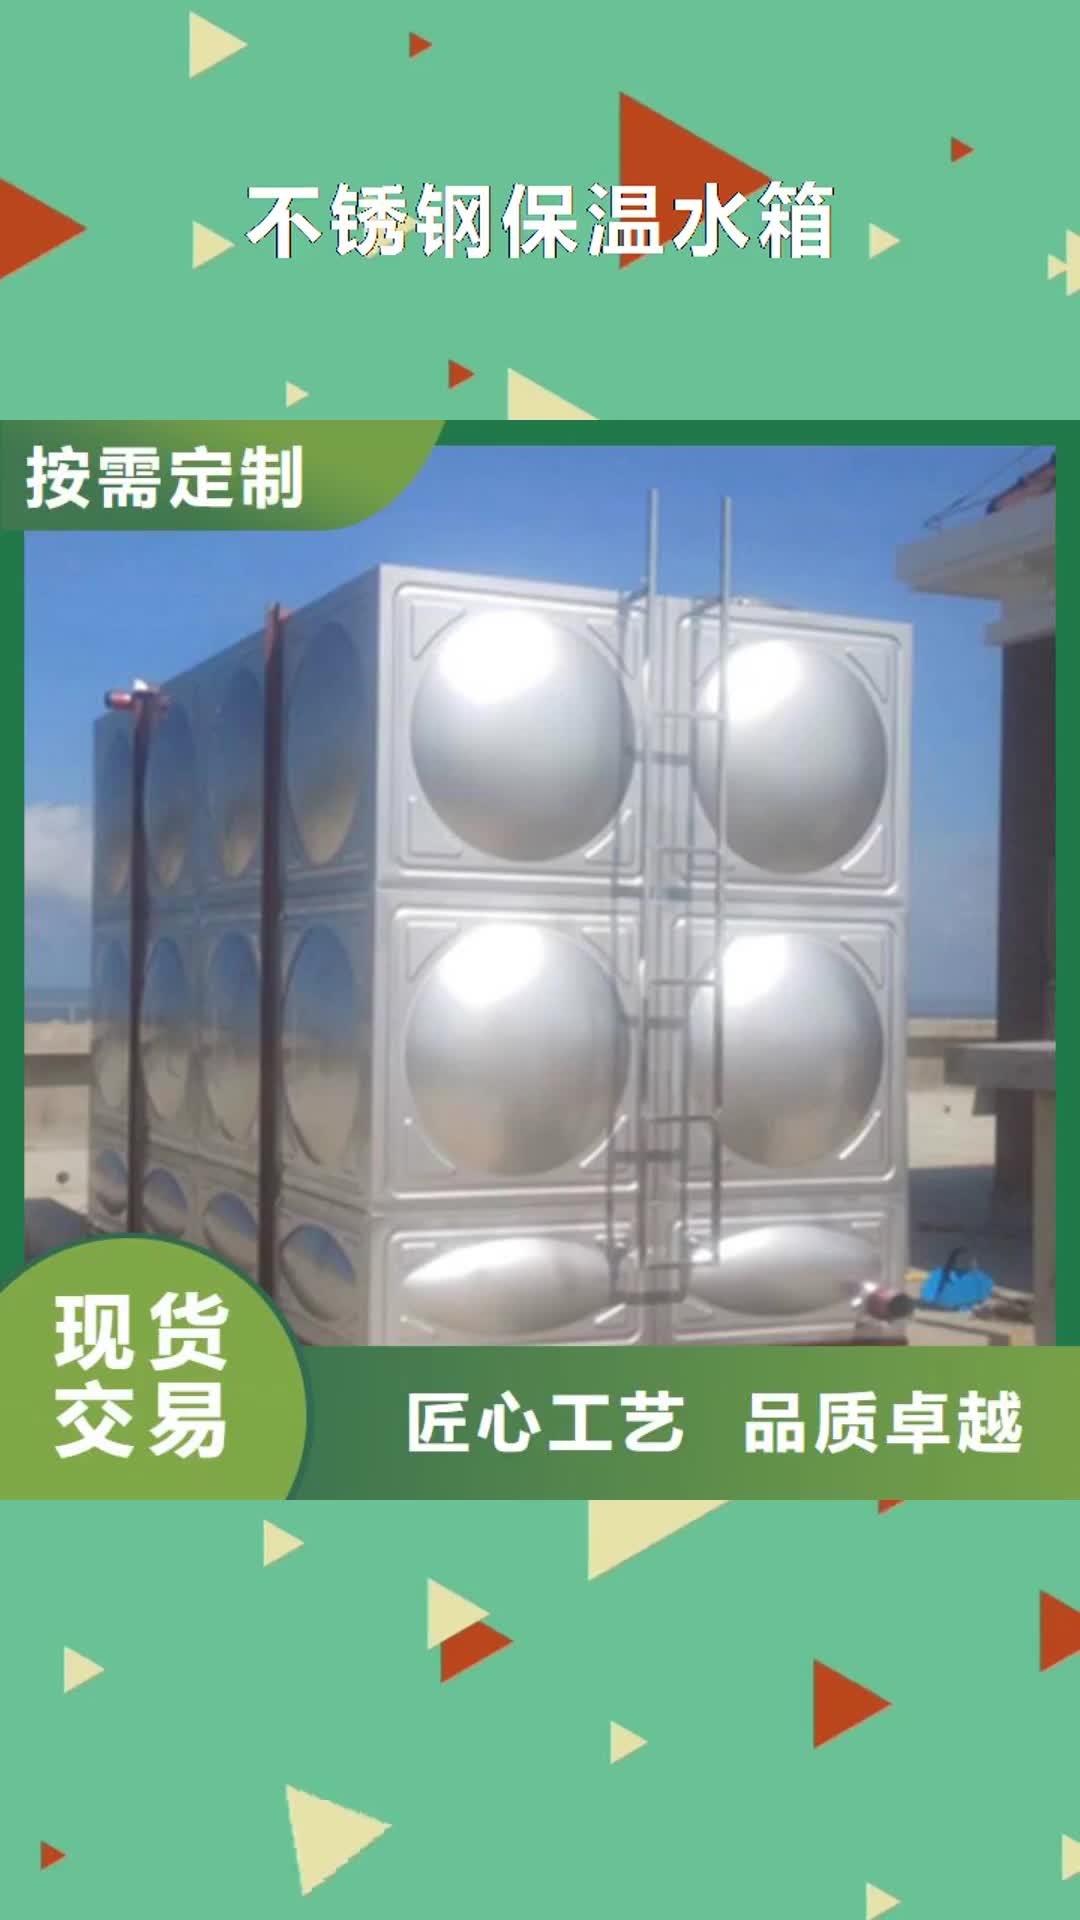 【泰安 不锈钢保温水箱 污水泵专注产品质量与服务】